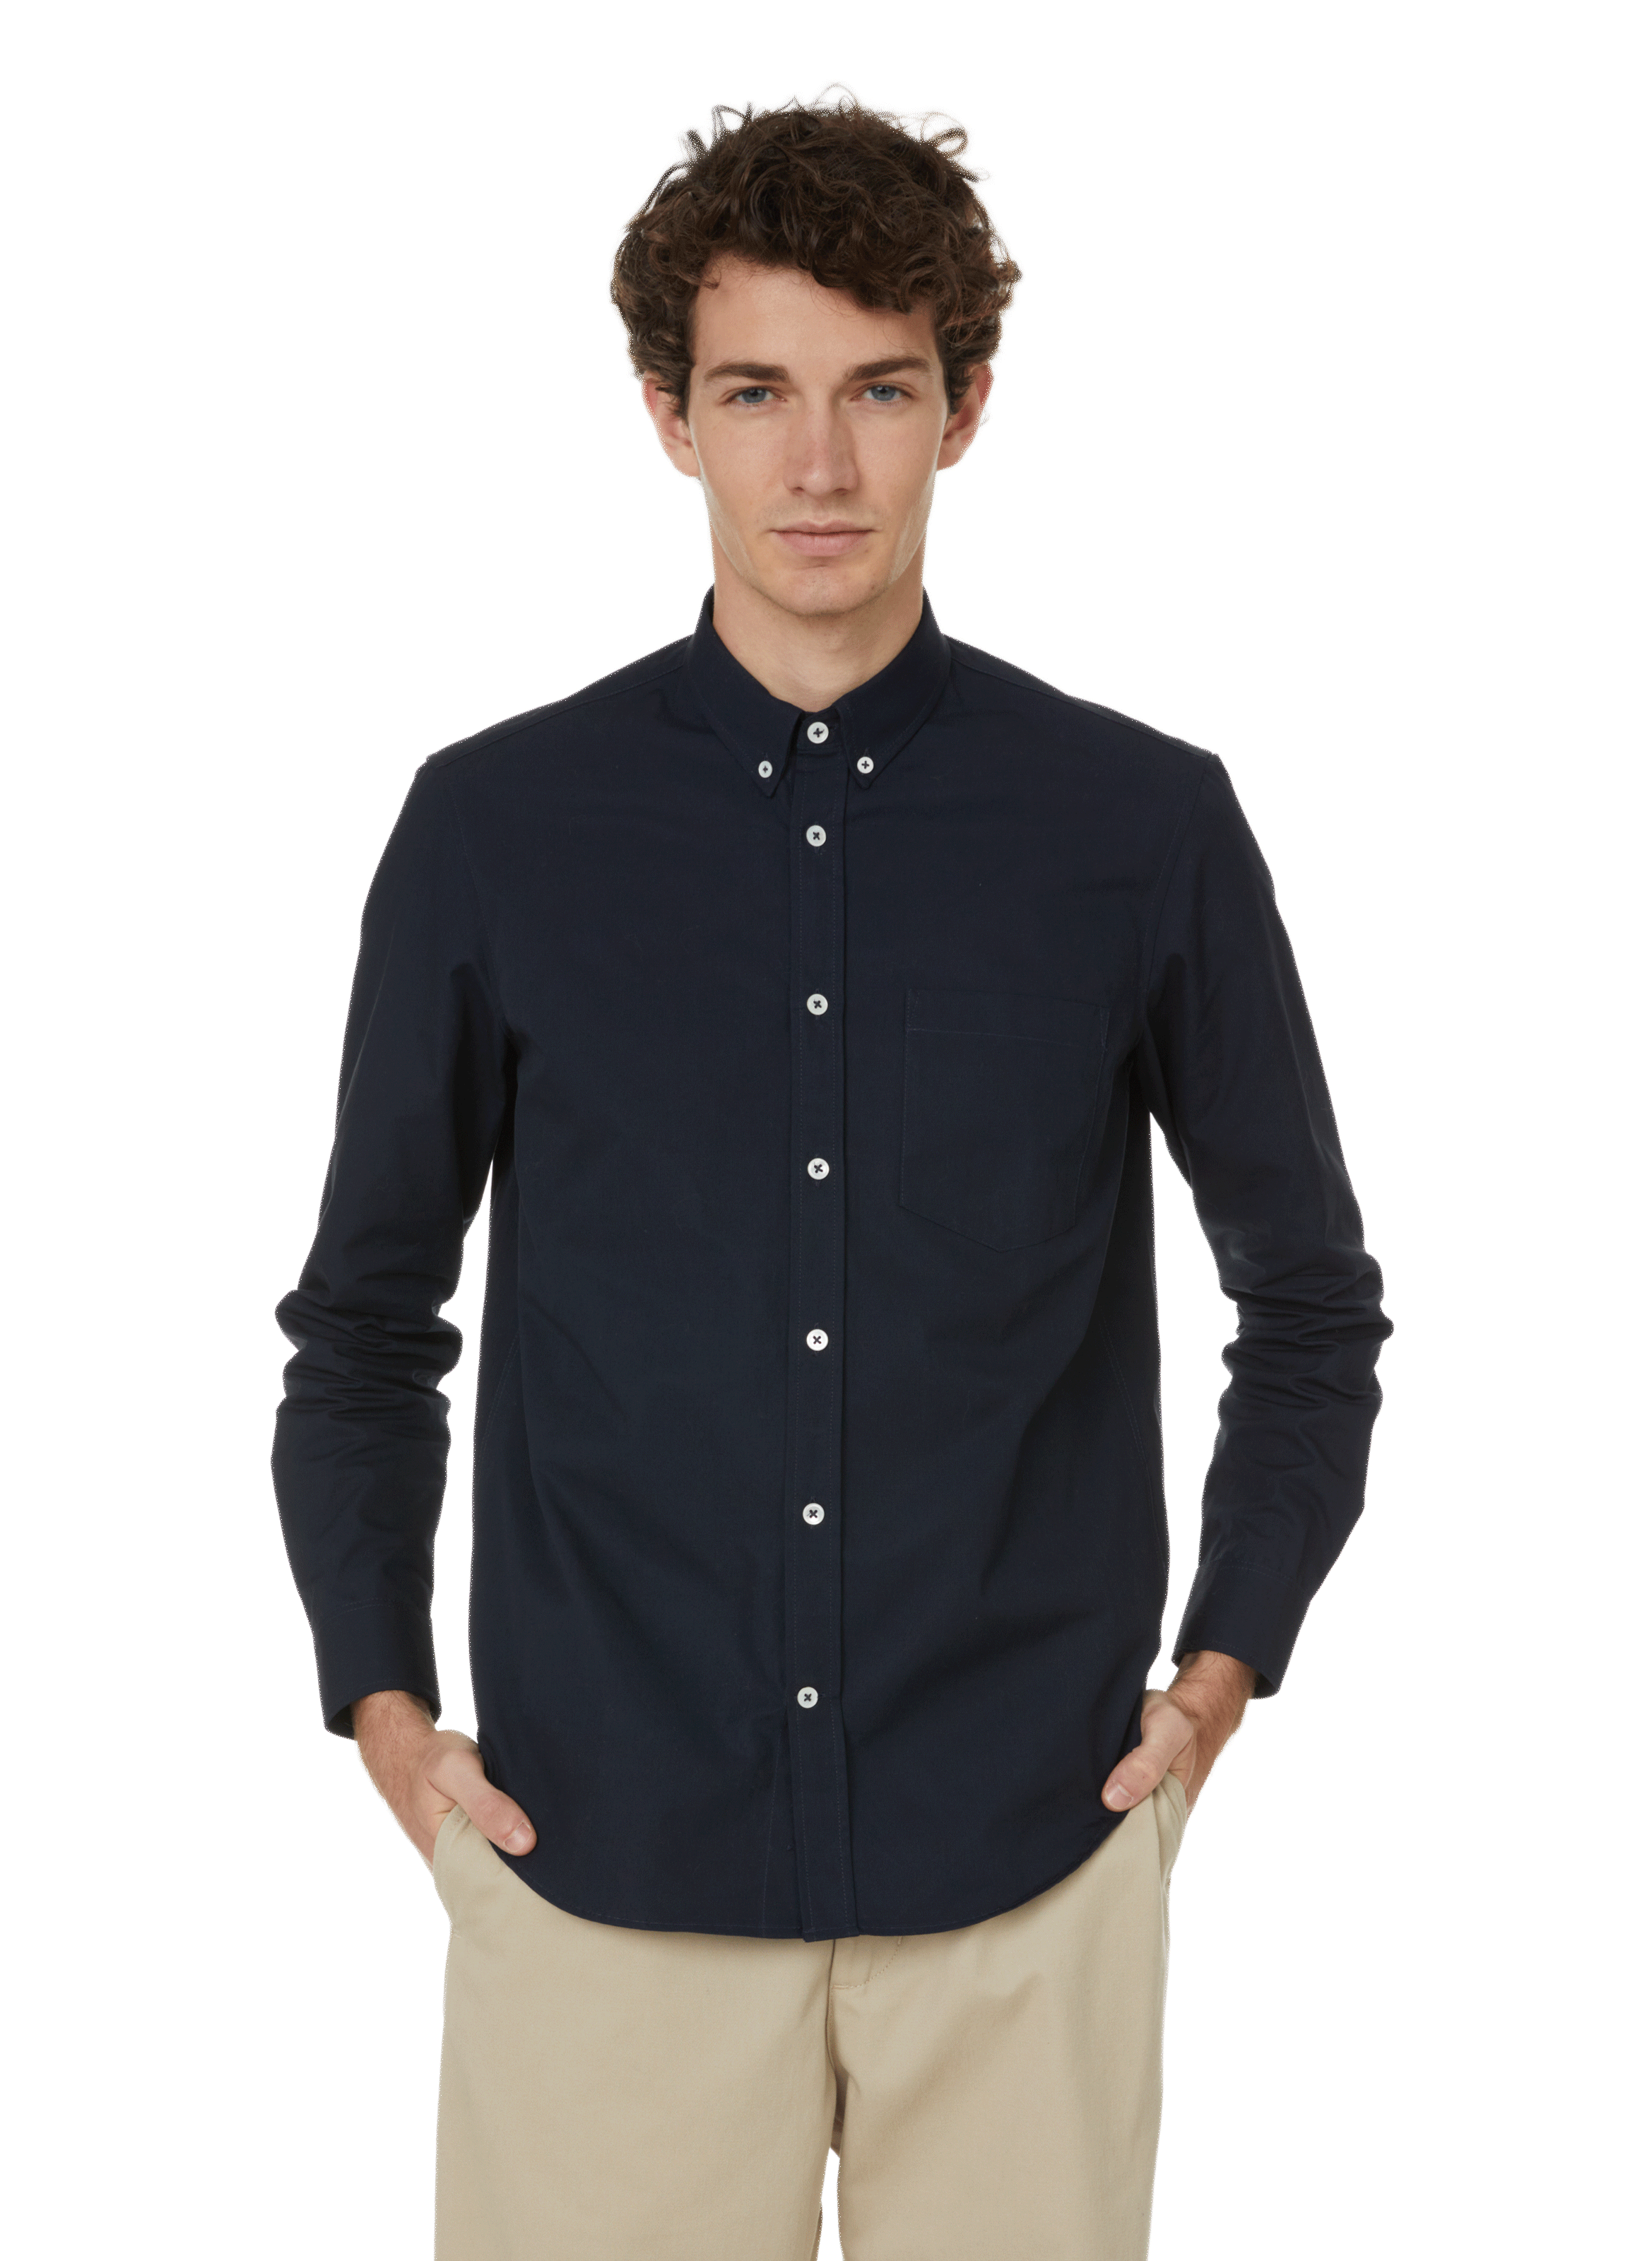 Printemps.com Homme Vêtements Chemises Manches courtes Chemise manches courtes en coton piqué 